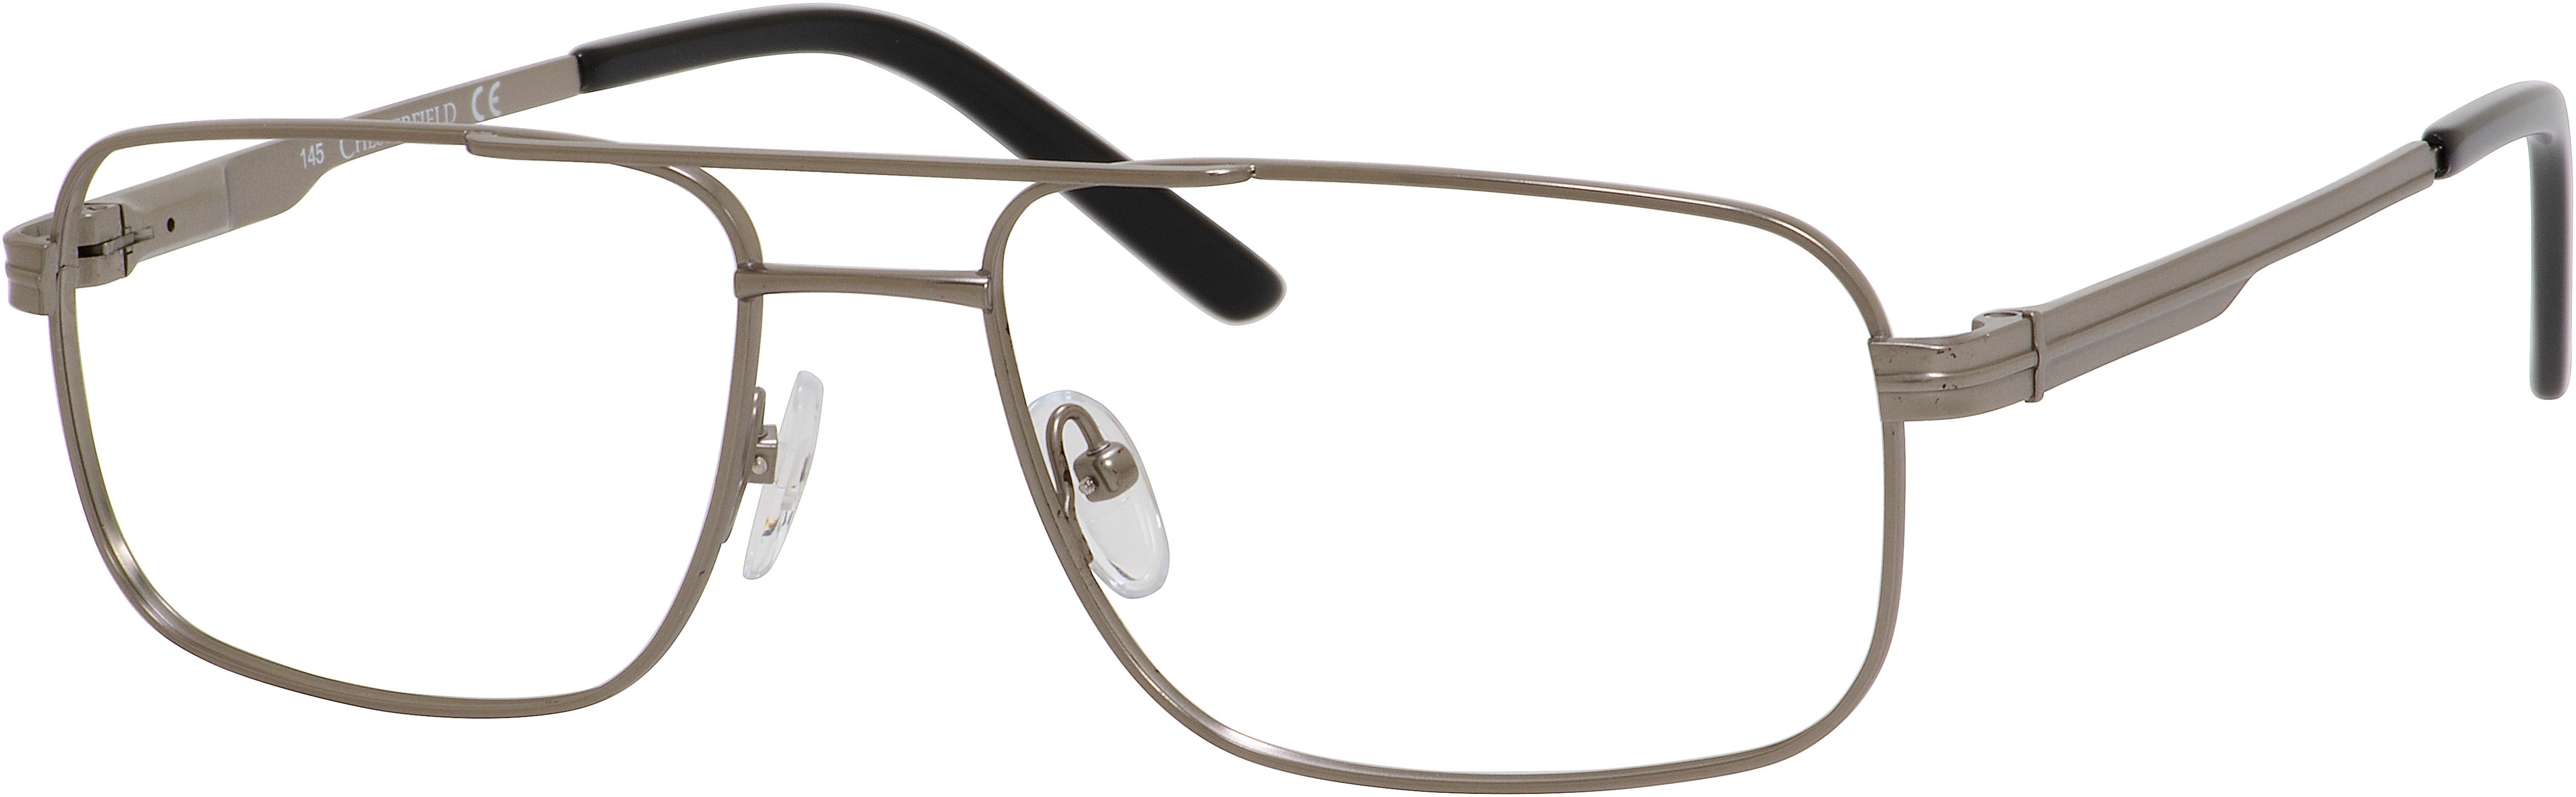  Chesterfield 866/T Rectangular Eyeglasses 01J1-01J1  Gunmetal (00 Demo Lens)